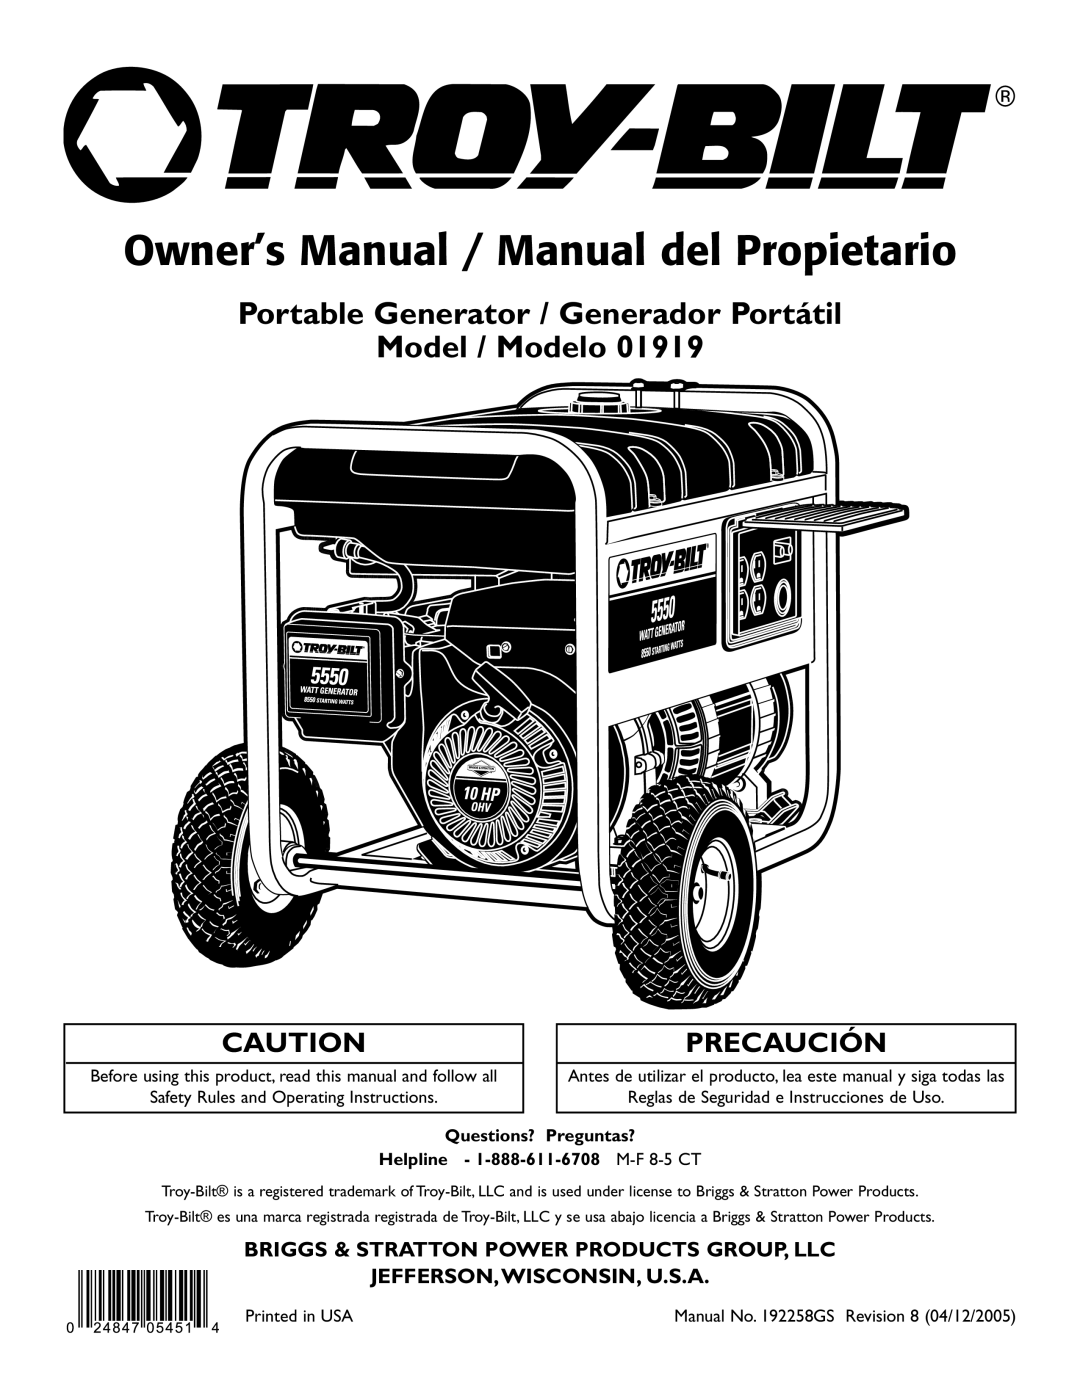 Troy-Bilt 1919 owner manual Portable Generator / Generador Portátil Model / Modelo, Jefferson,Wisconsin, U.S.A, Precaución 